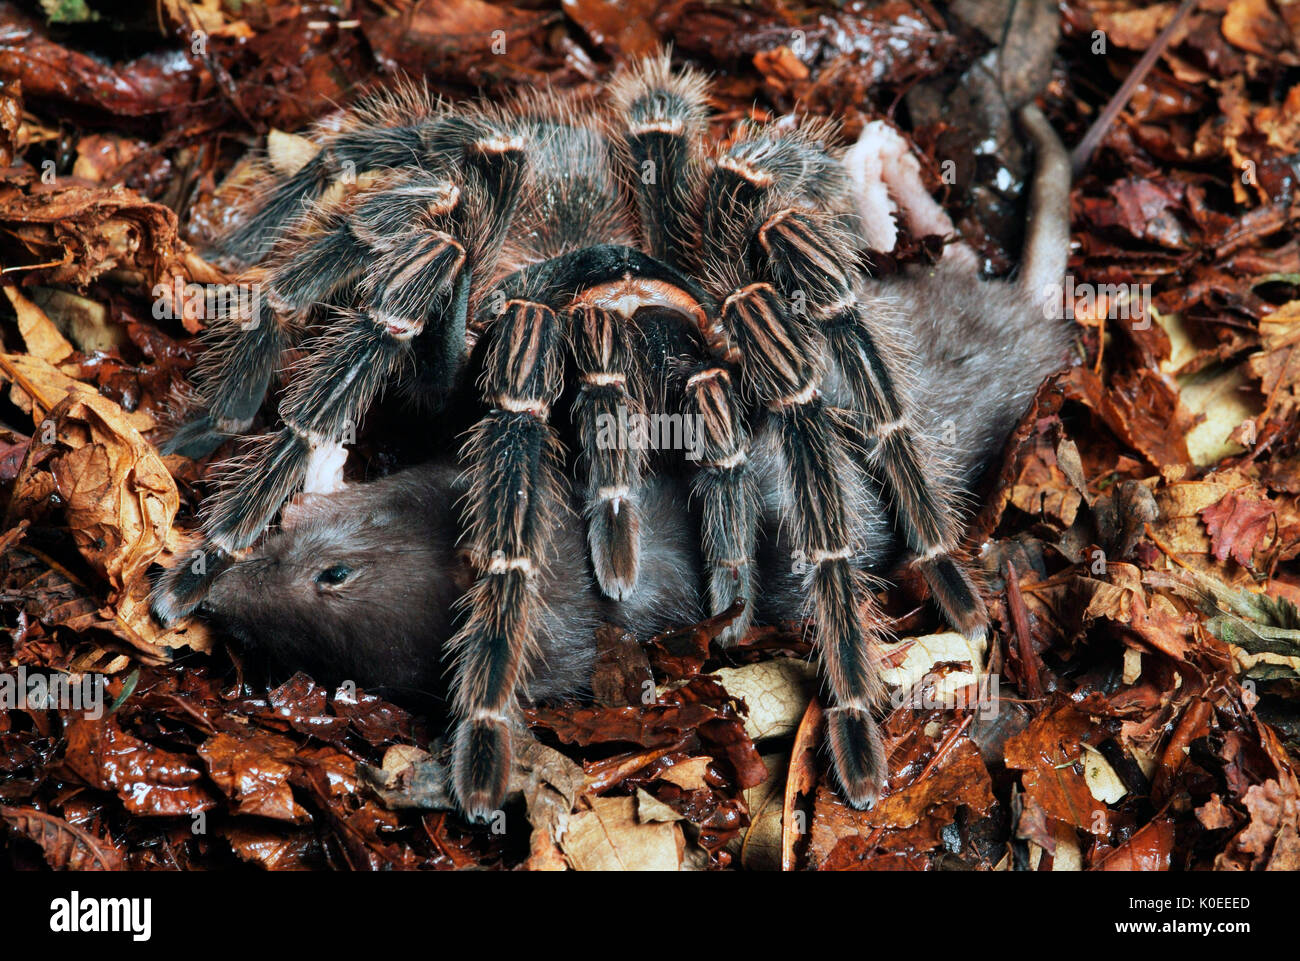 Tarantula Spider, rosa salmone Bird mangiare, Lasiodora parhaybana, Brasile, con preda di ratto, sul suolo della foresta, giungla Foto Stock